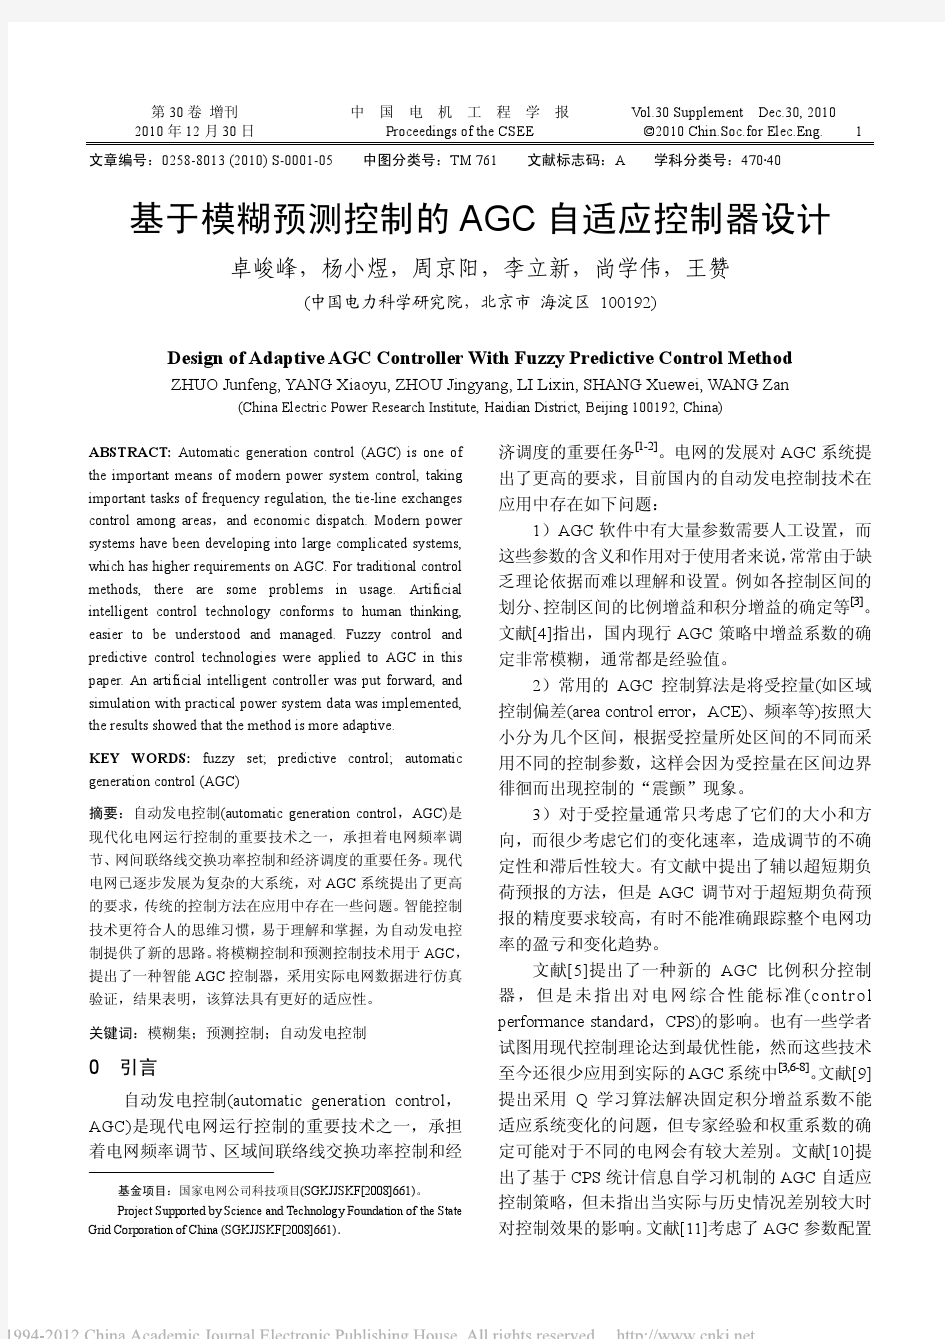 基于模糊预测控制的AGC自适应控制器设计_卓峻峰